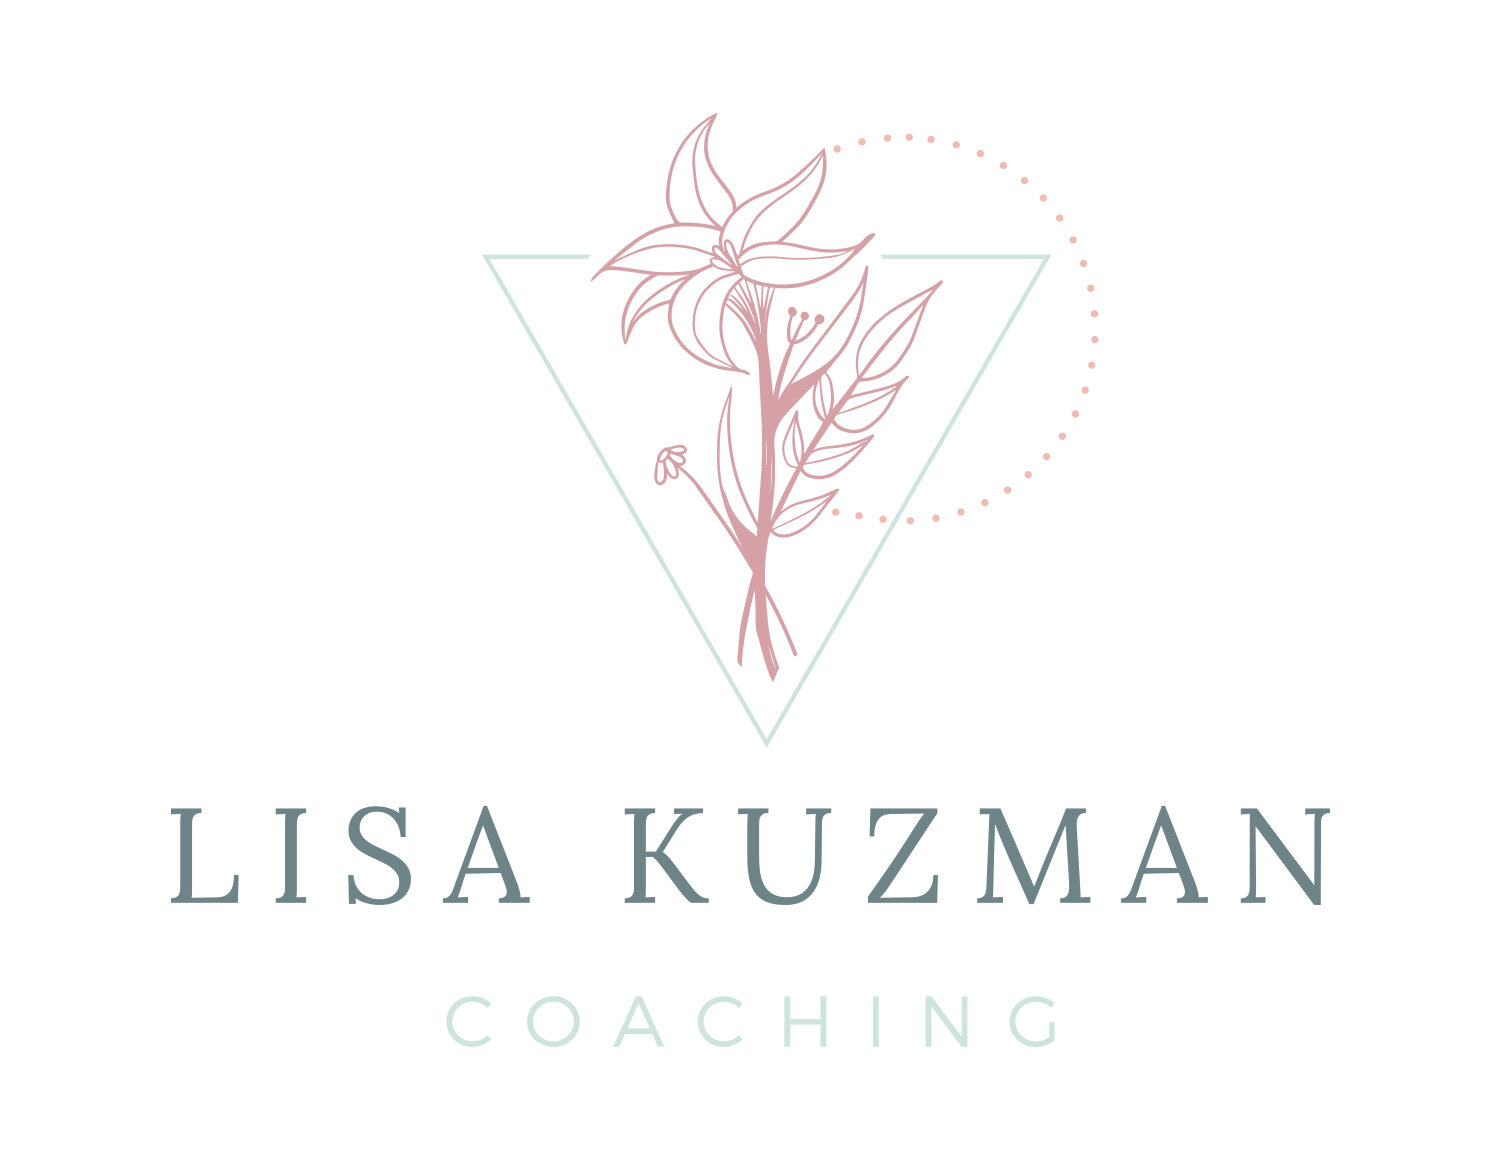 Lisa Kuzman Coaching